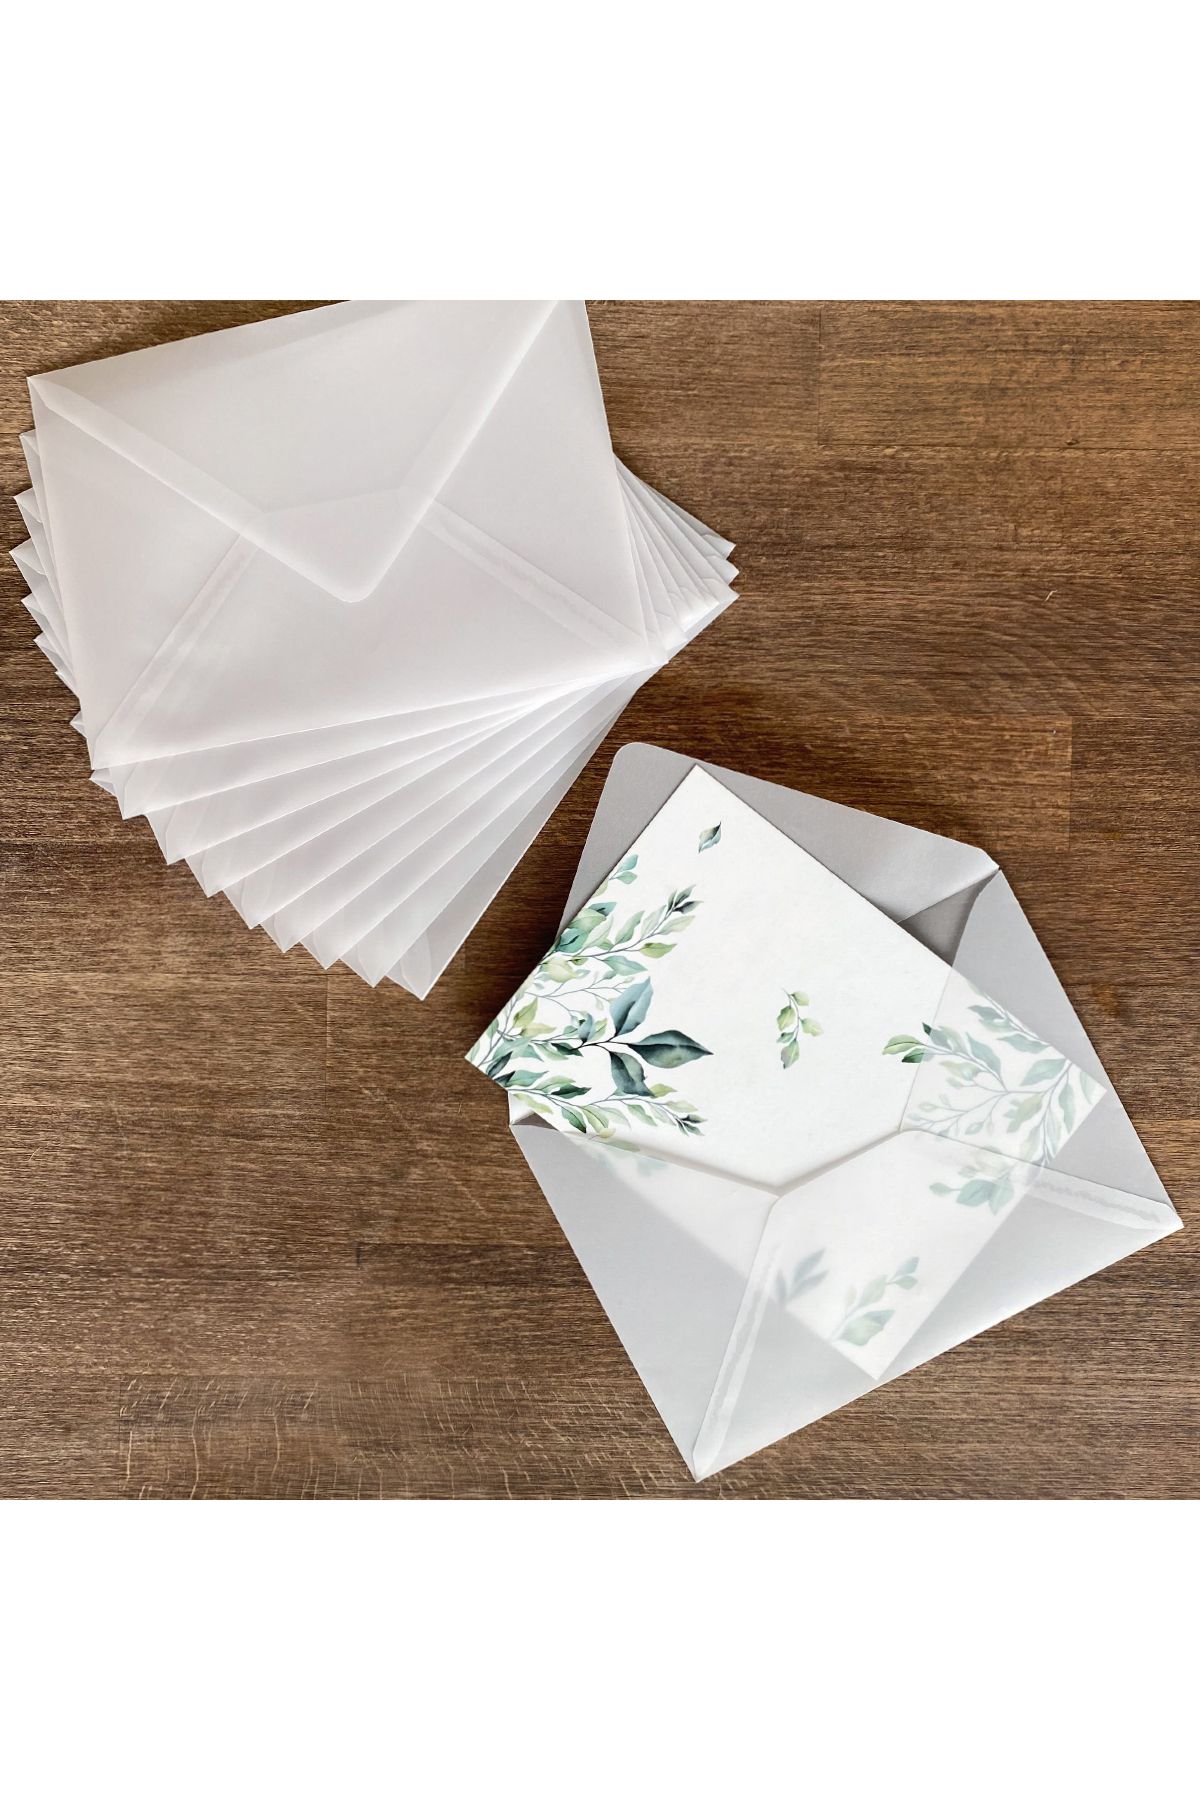 Bimotif Beyaz Transparan Zarf, 13x18 Cm 100 Adet